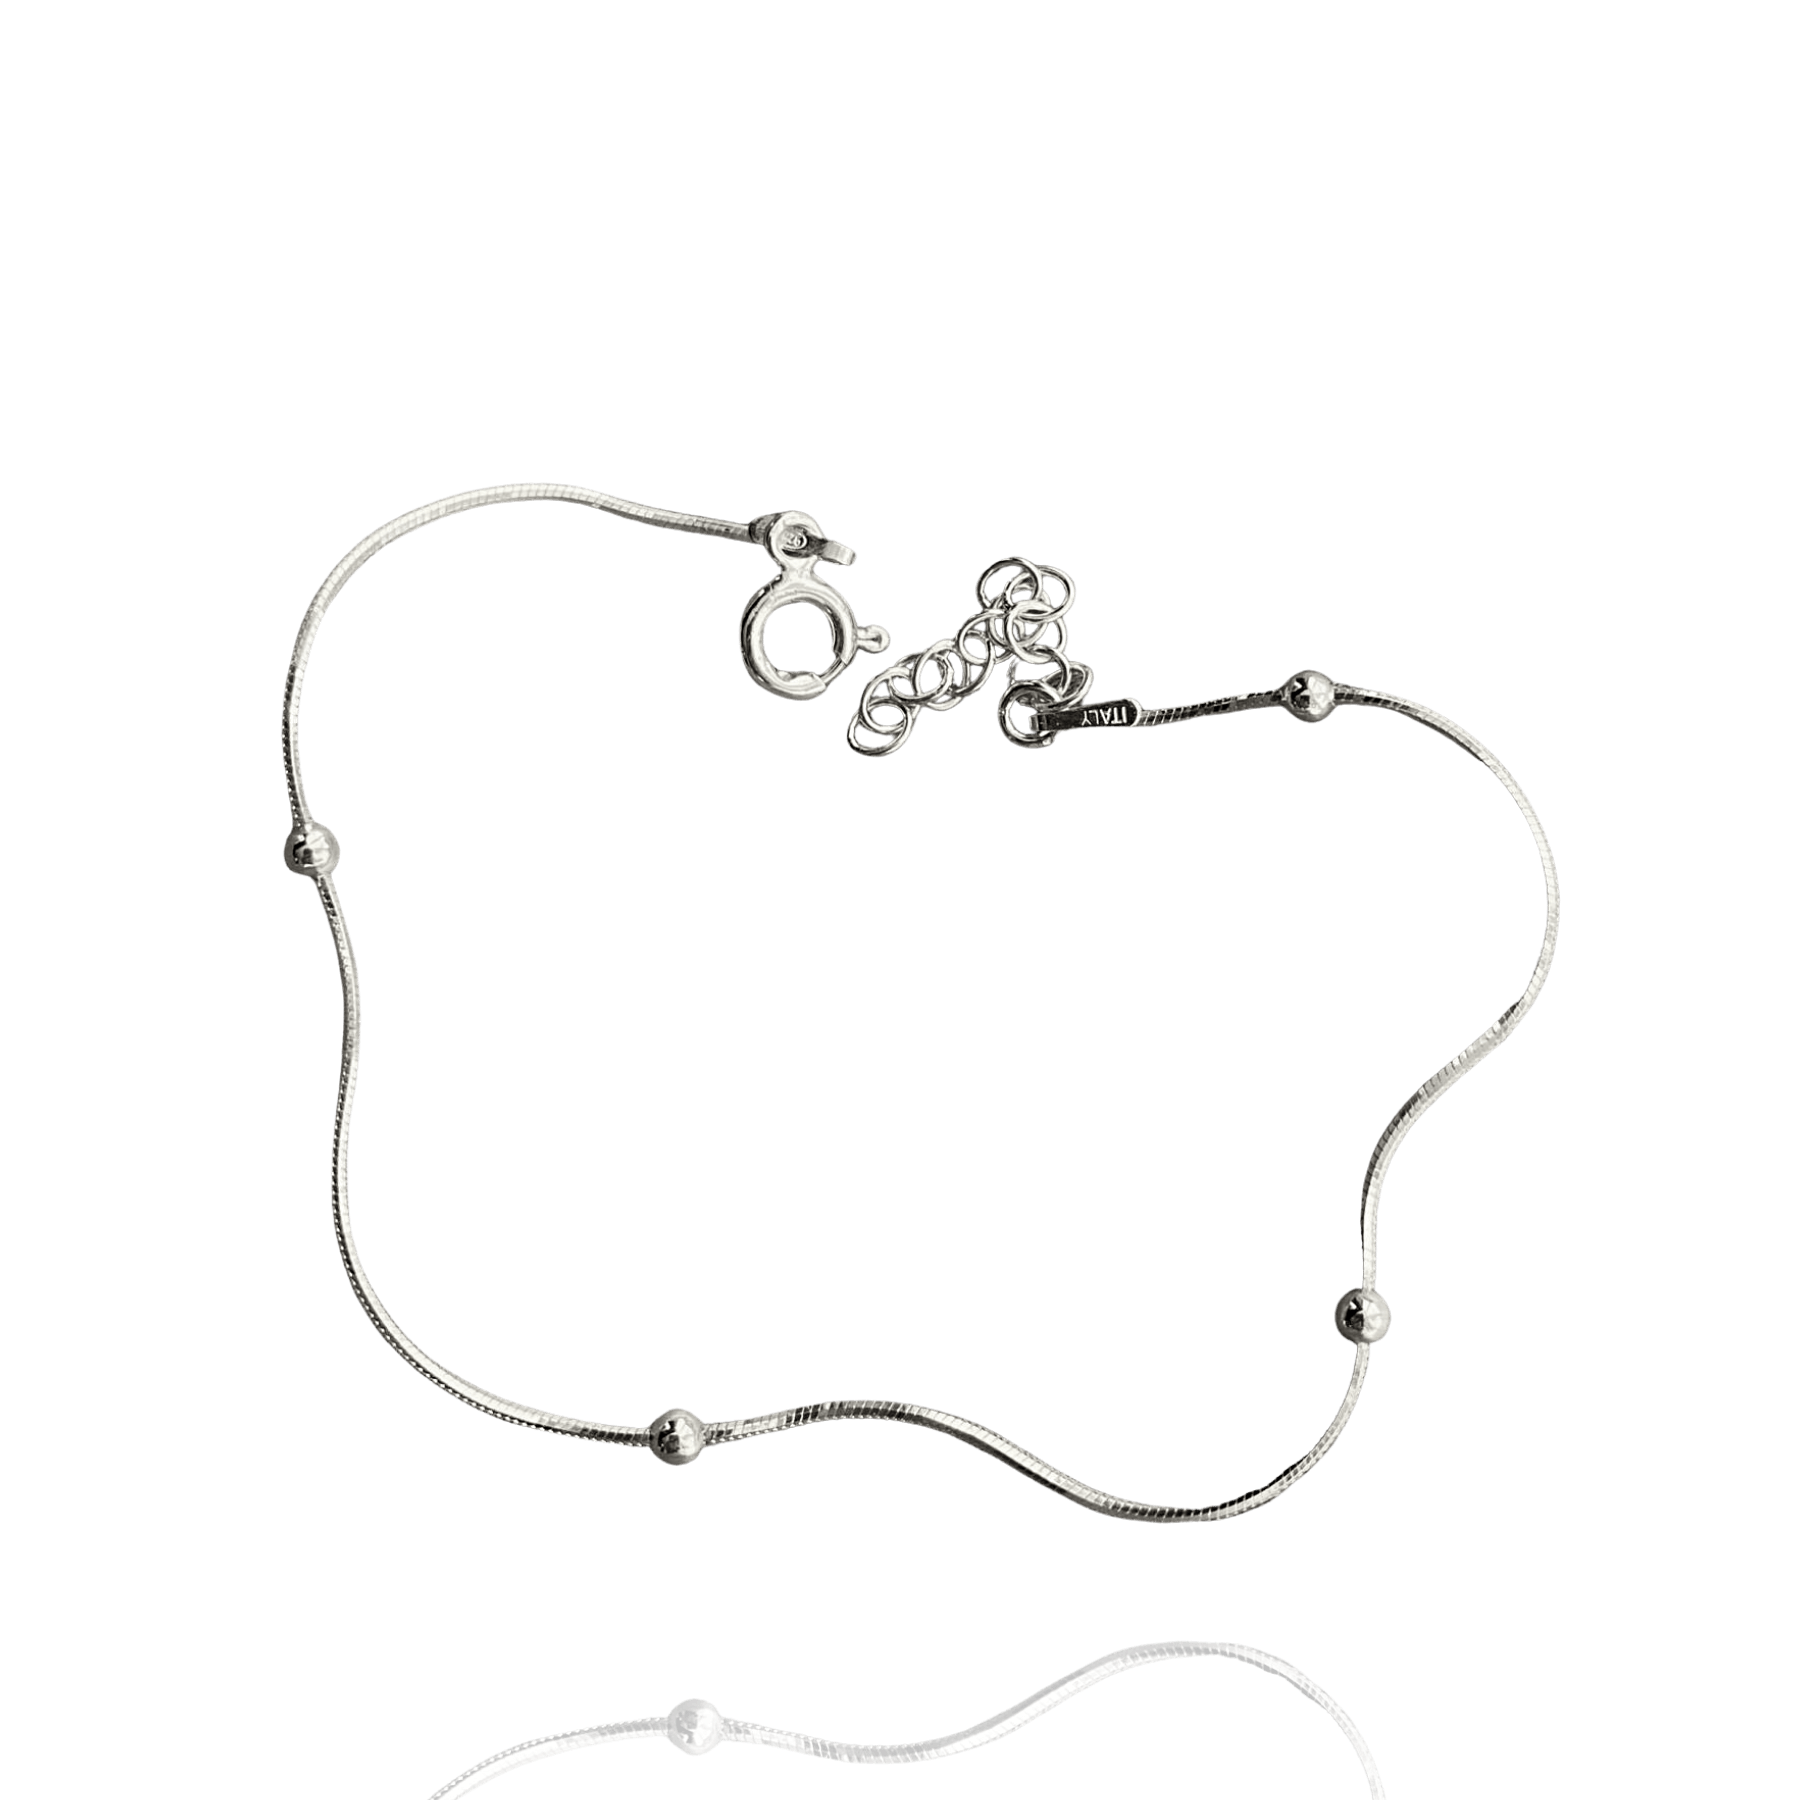 Itallian Bead Chain Sterling Silver Bracelet - Spero London